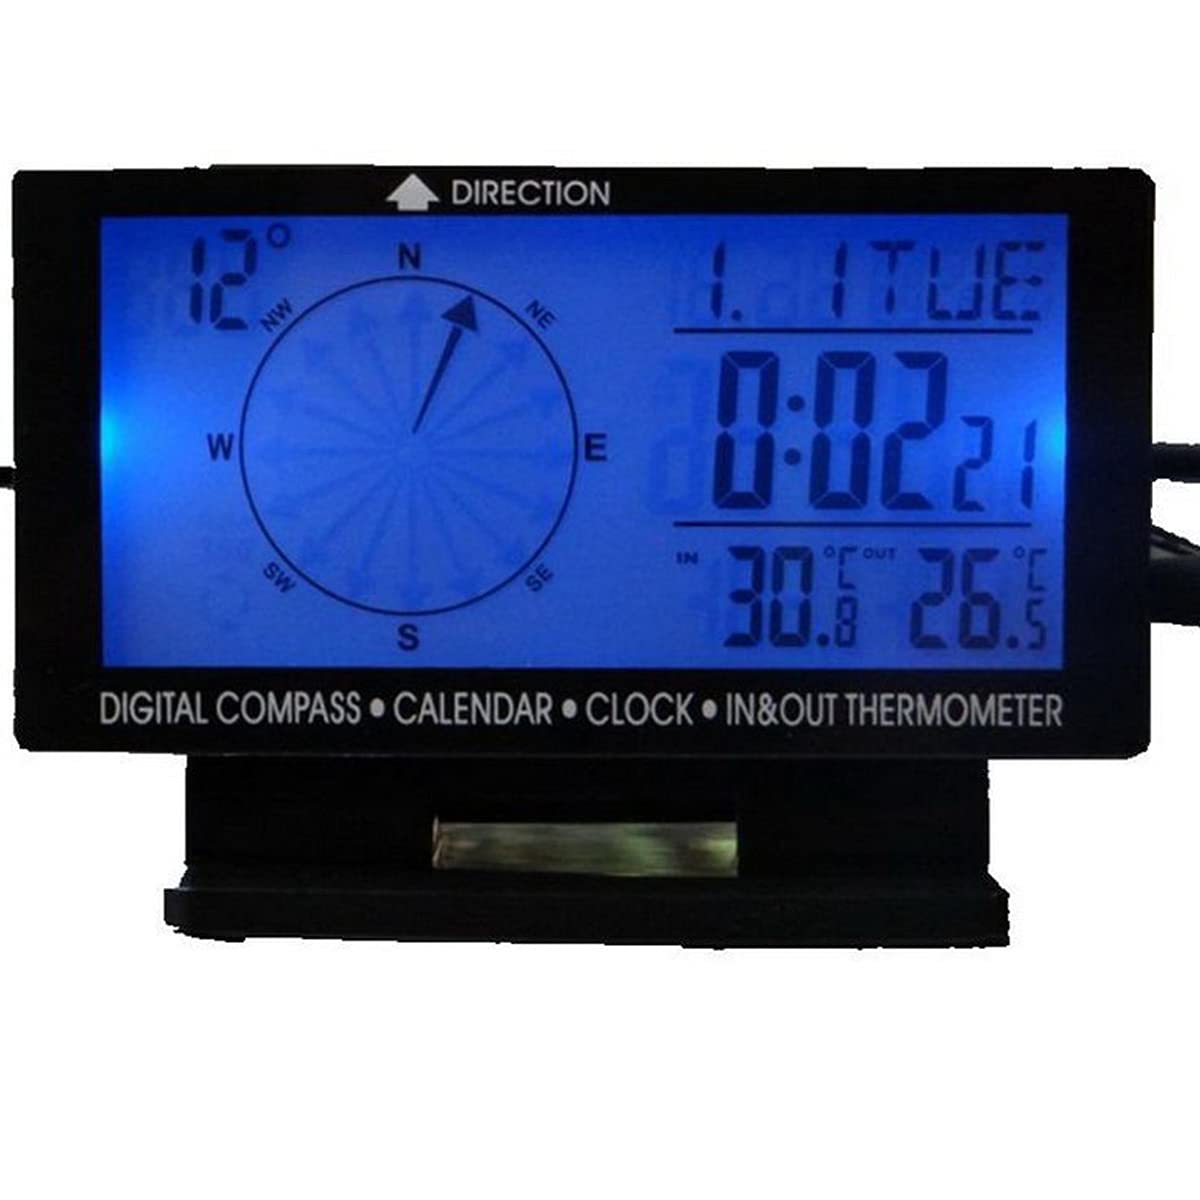 WEPARTICULAR Digitaler Kompass für Auto, 4,6 Zoll (11,9 cm), LCD-Display, Hintergrundbeleuchtung, Blau, Uhr, Eingang/Ausgang, Temperatur, Kalender, Uhrzeit, Datum von WEPARTICULAR